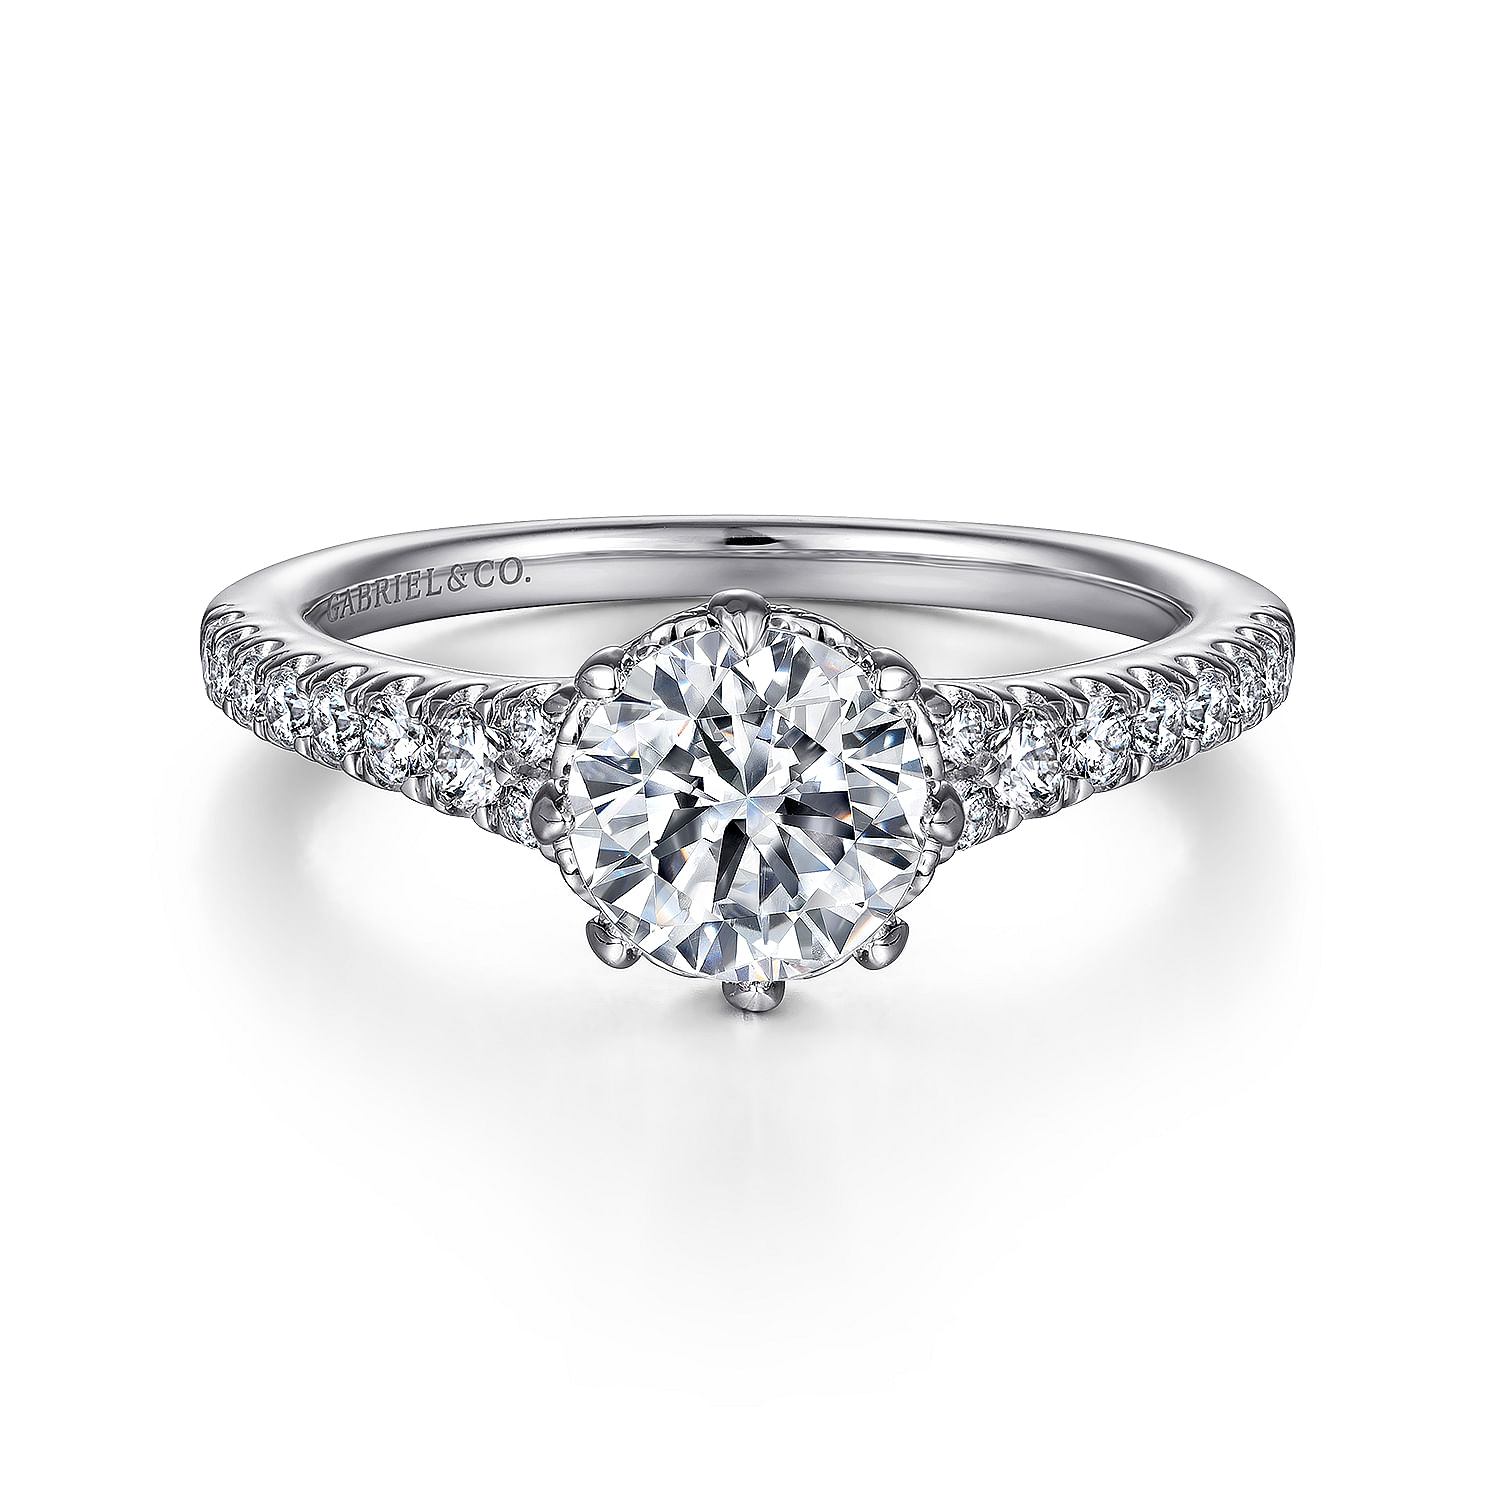 Sherilynn---14K-White-Gold-Round-Diamond-Engagement-Ring1